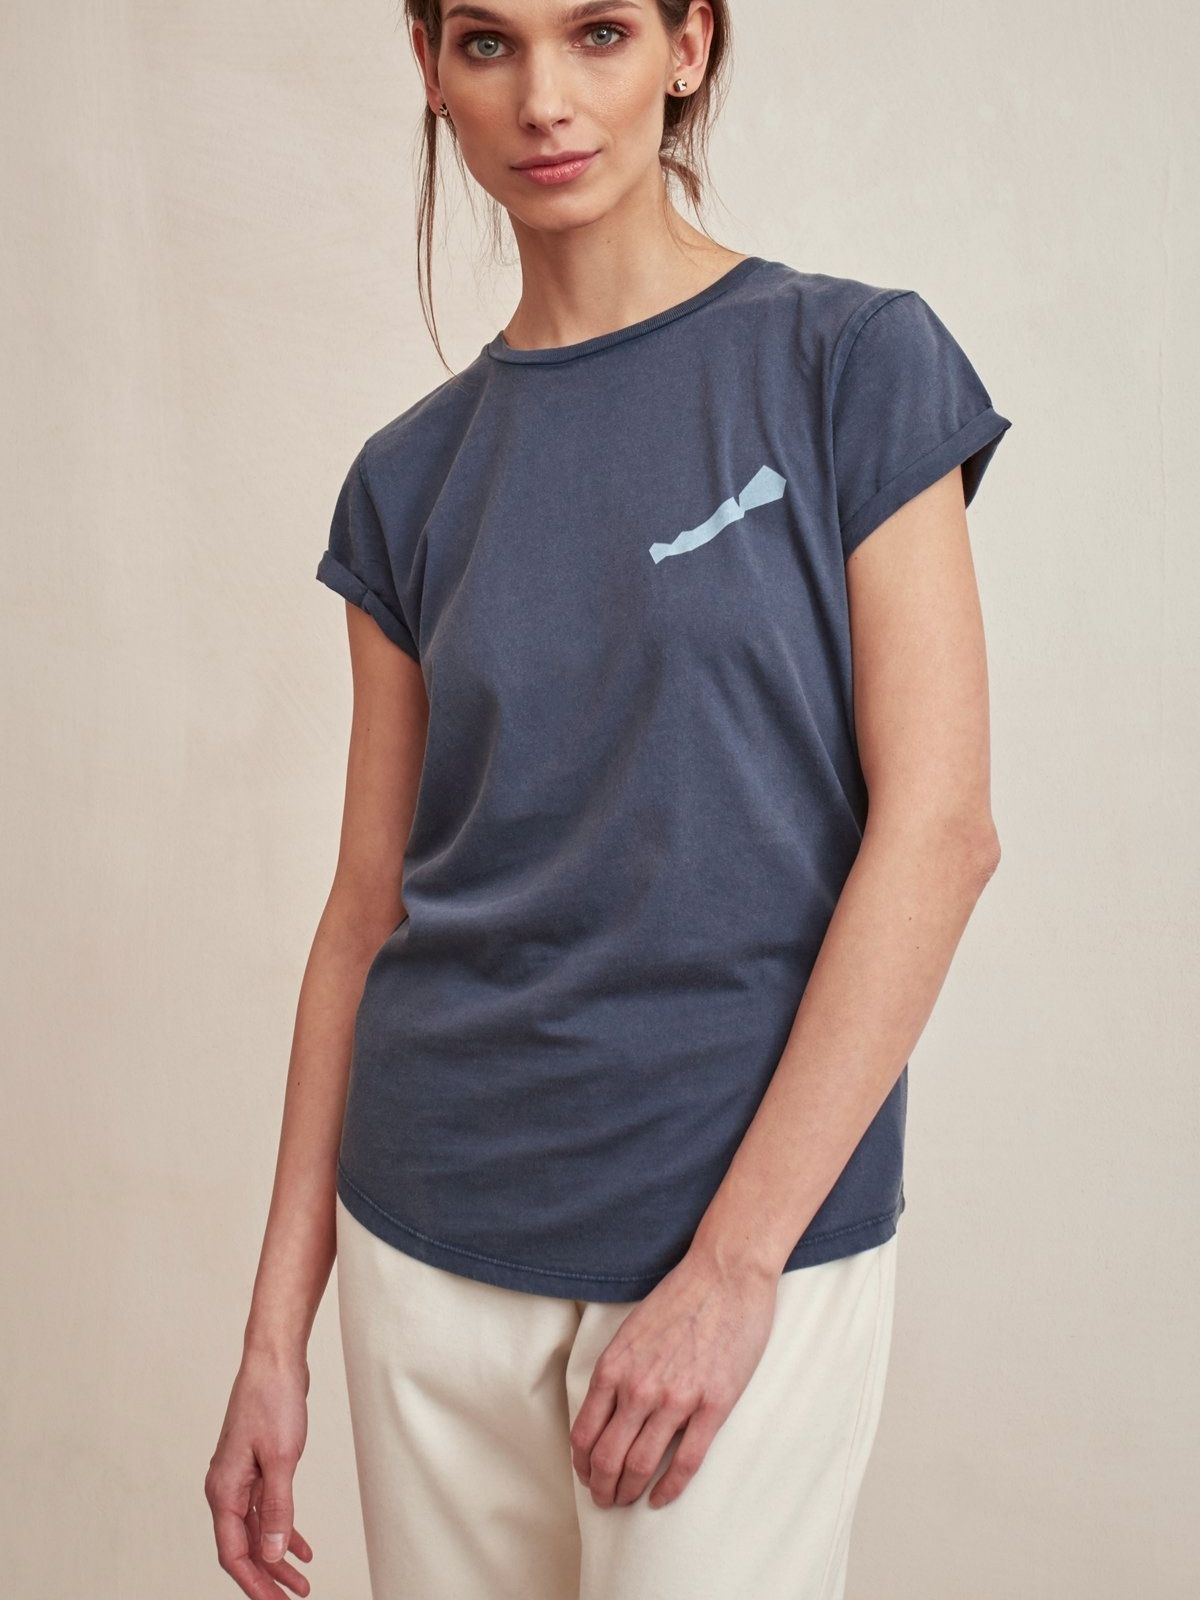 Blue women's t-shirt with Balaton pattern